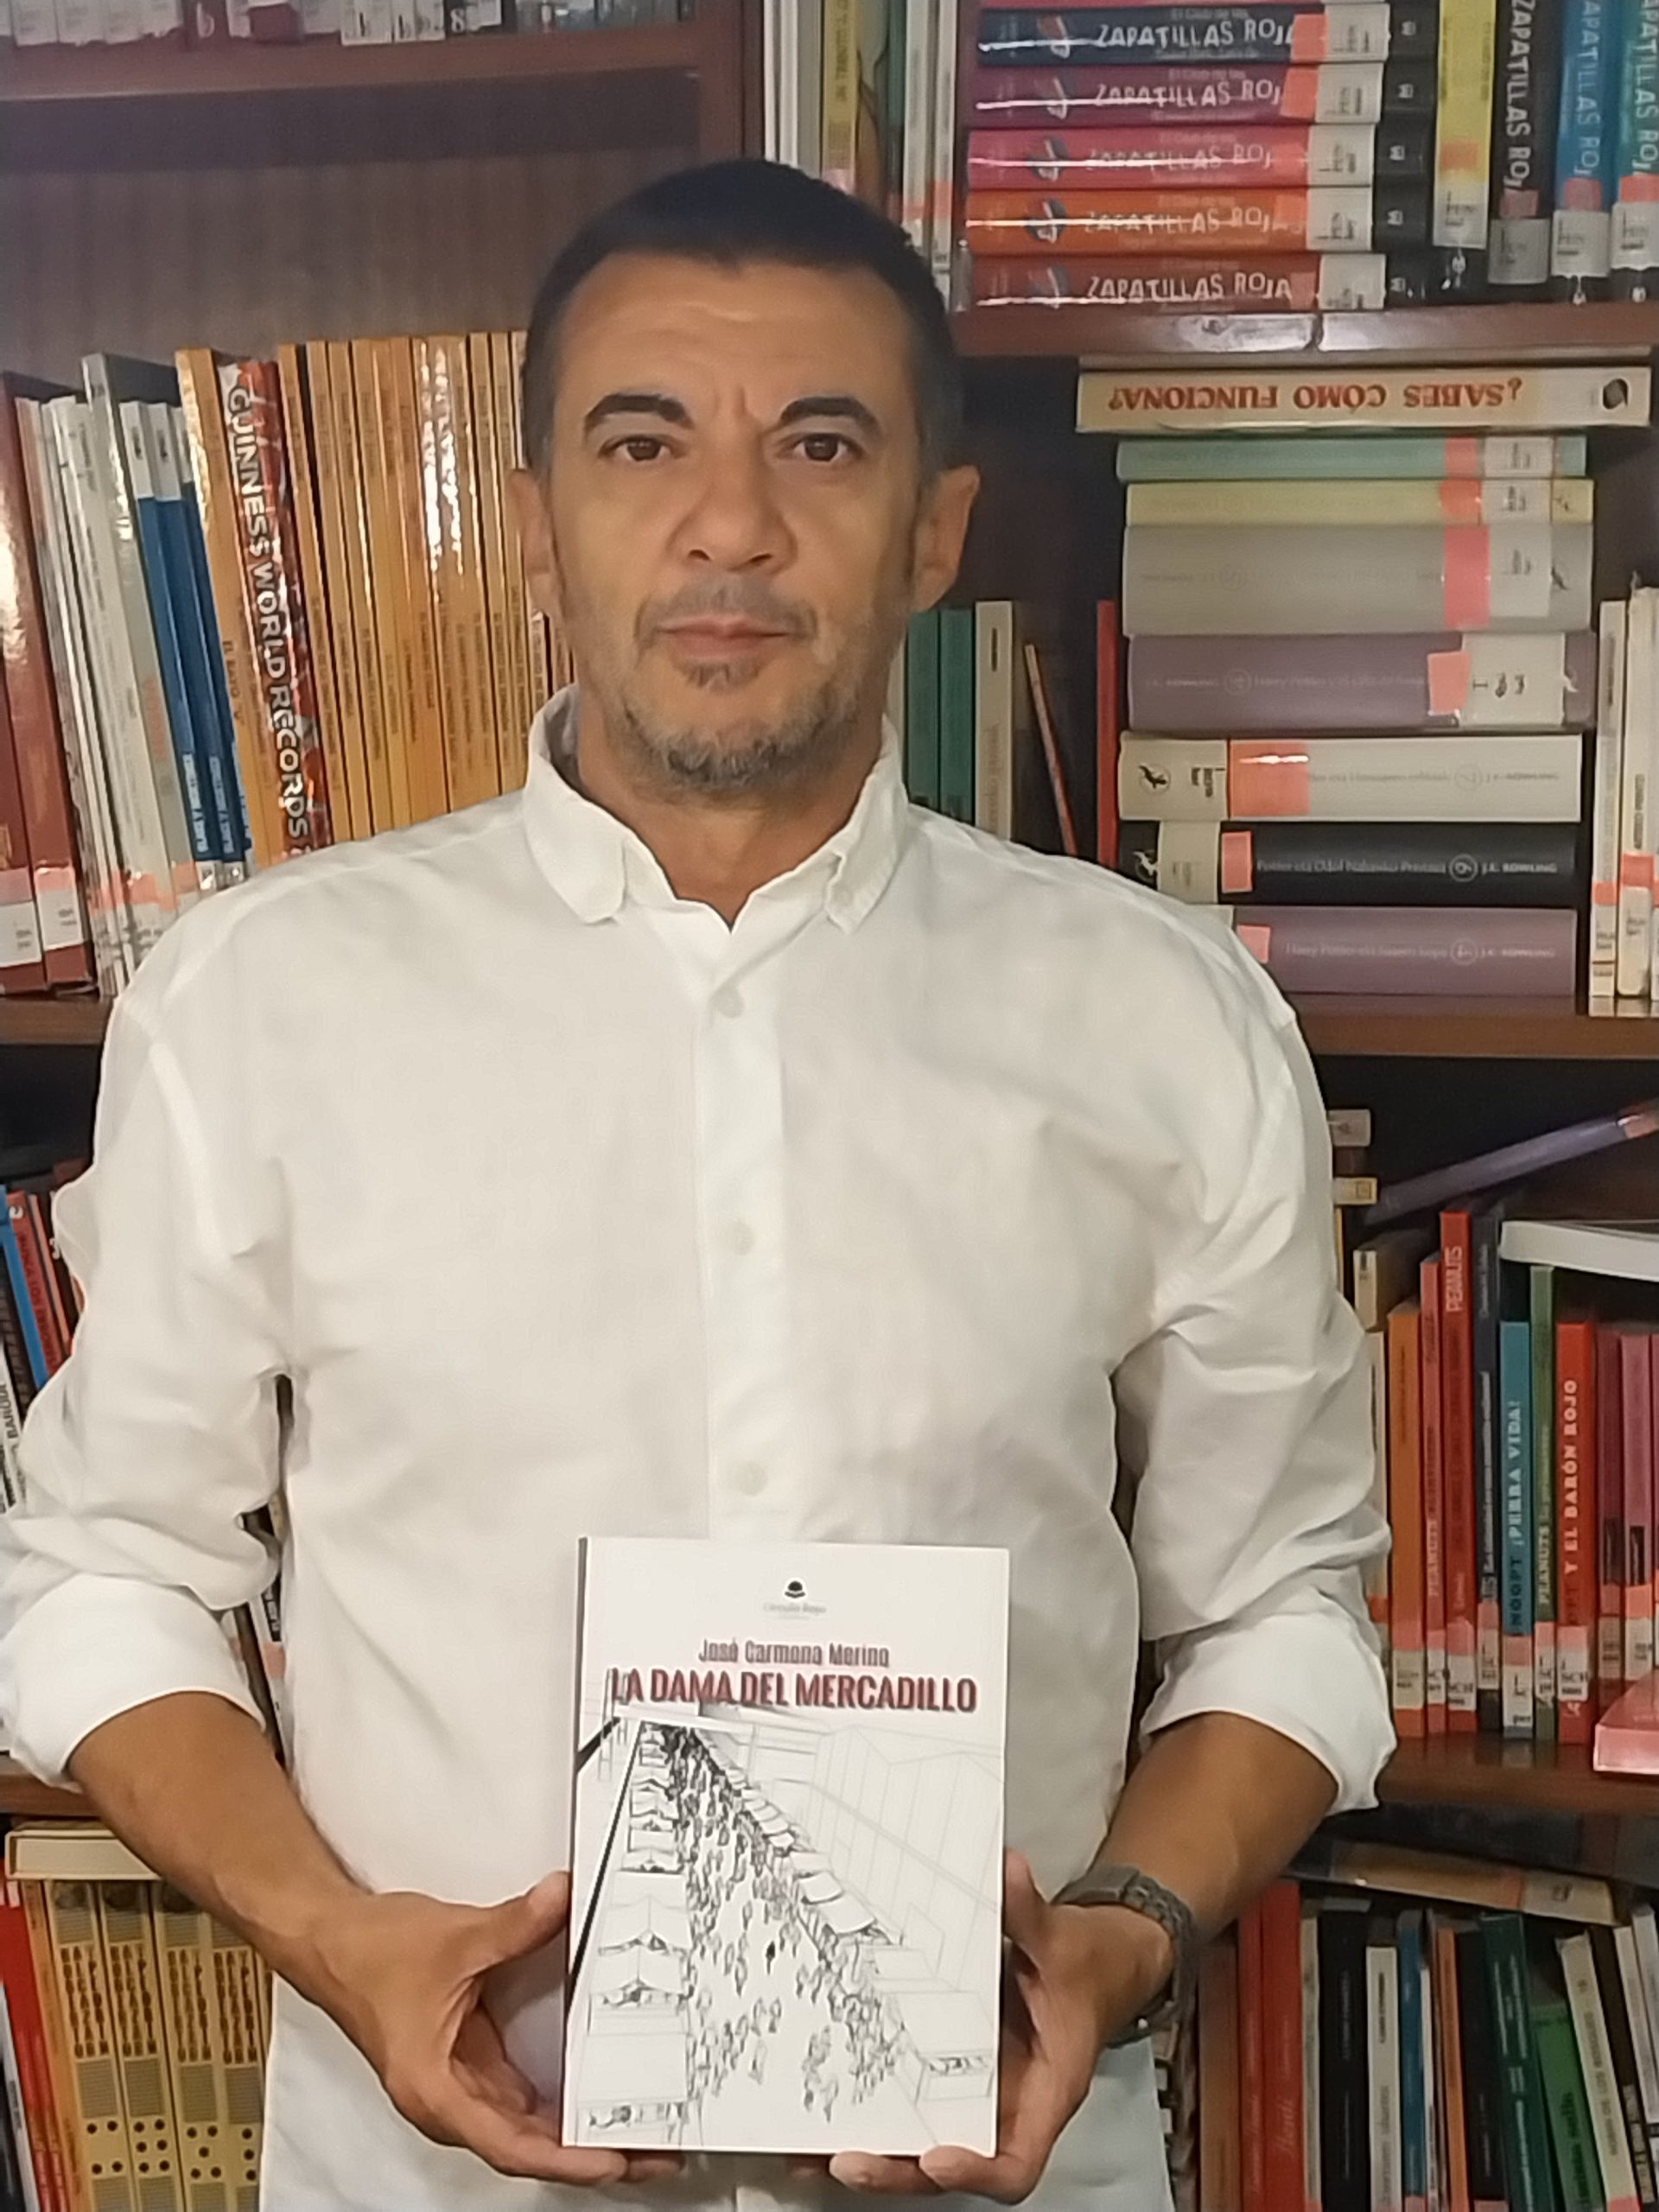 Charlamos con José Carmona Merino, sobre su obra publicada con Círculo Rojo “La dama del mercadillo”.